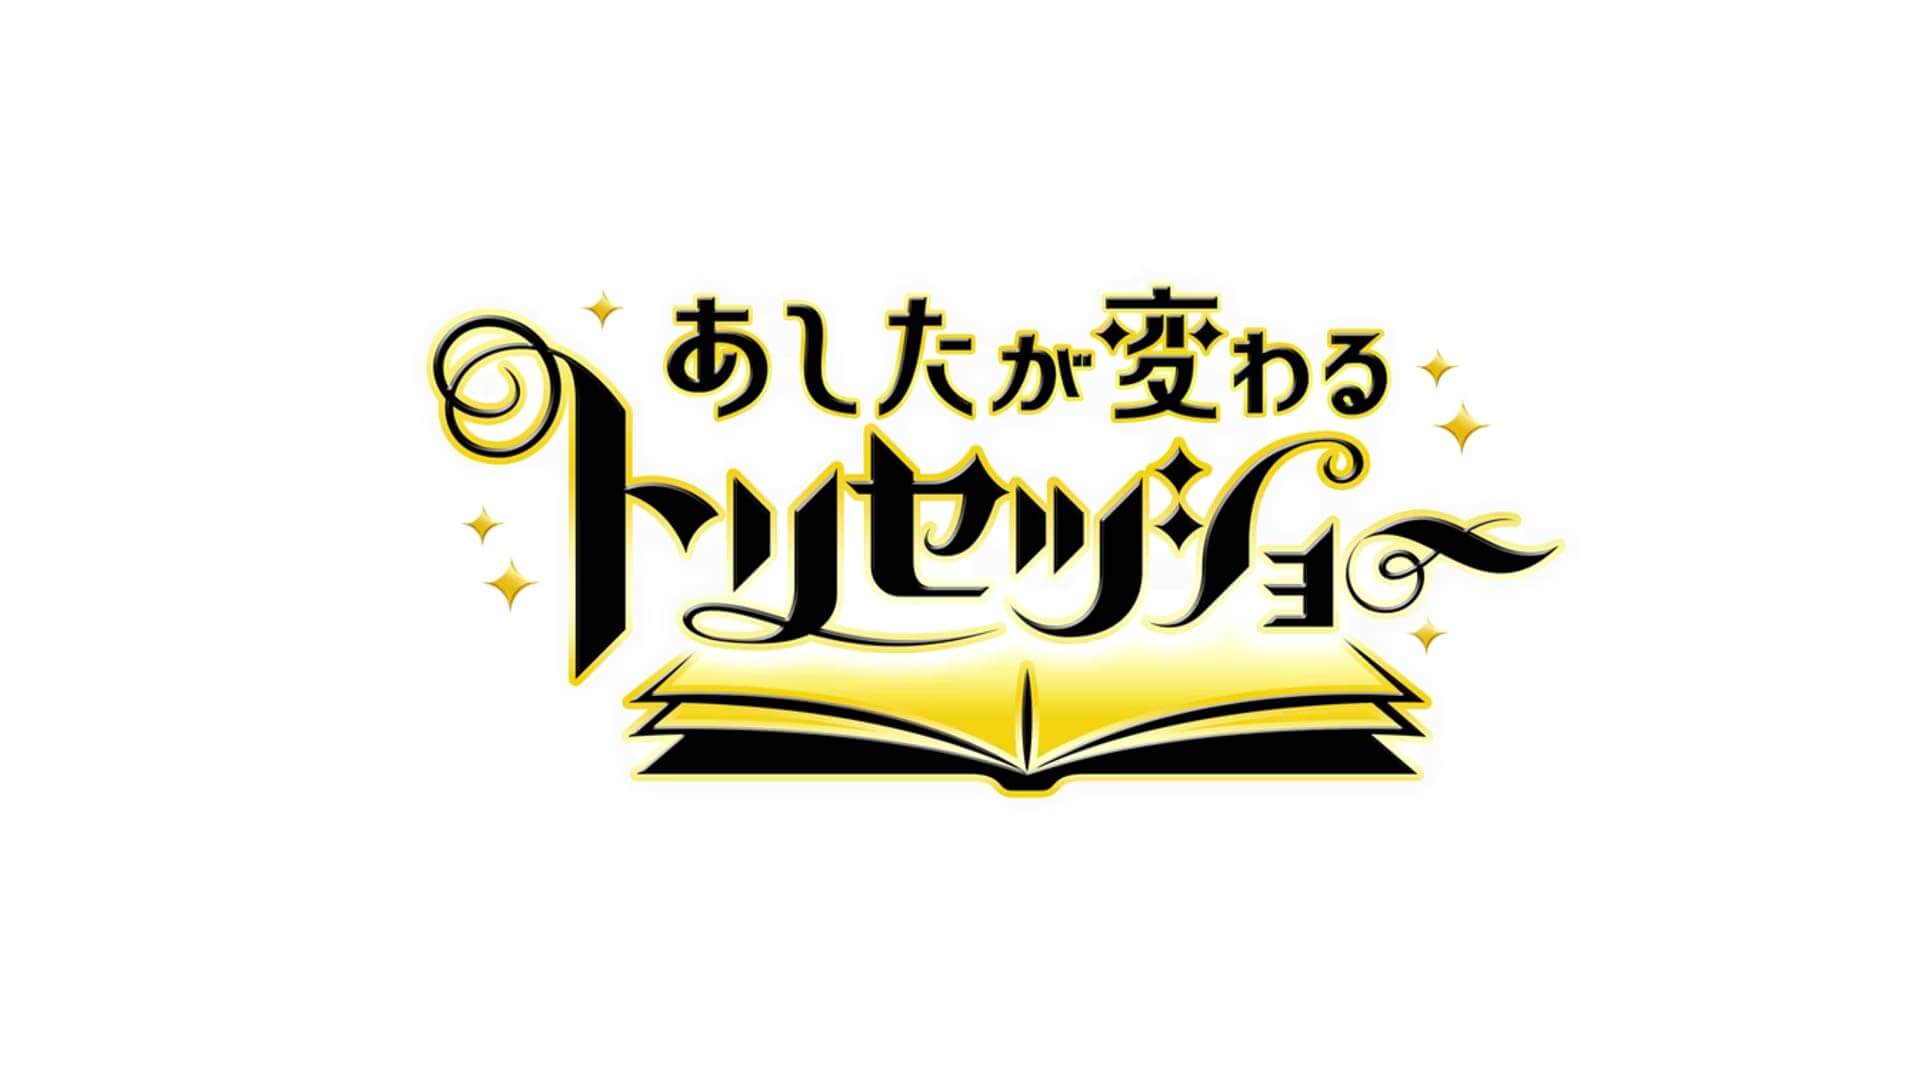 6/1 (Thu) 19:57~ NHK “Ashita ga kawaru trisetsu show” will be introduced.